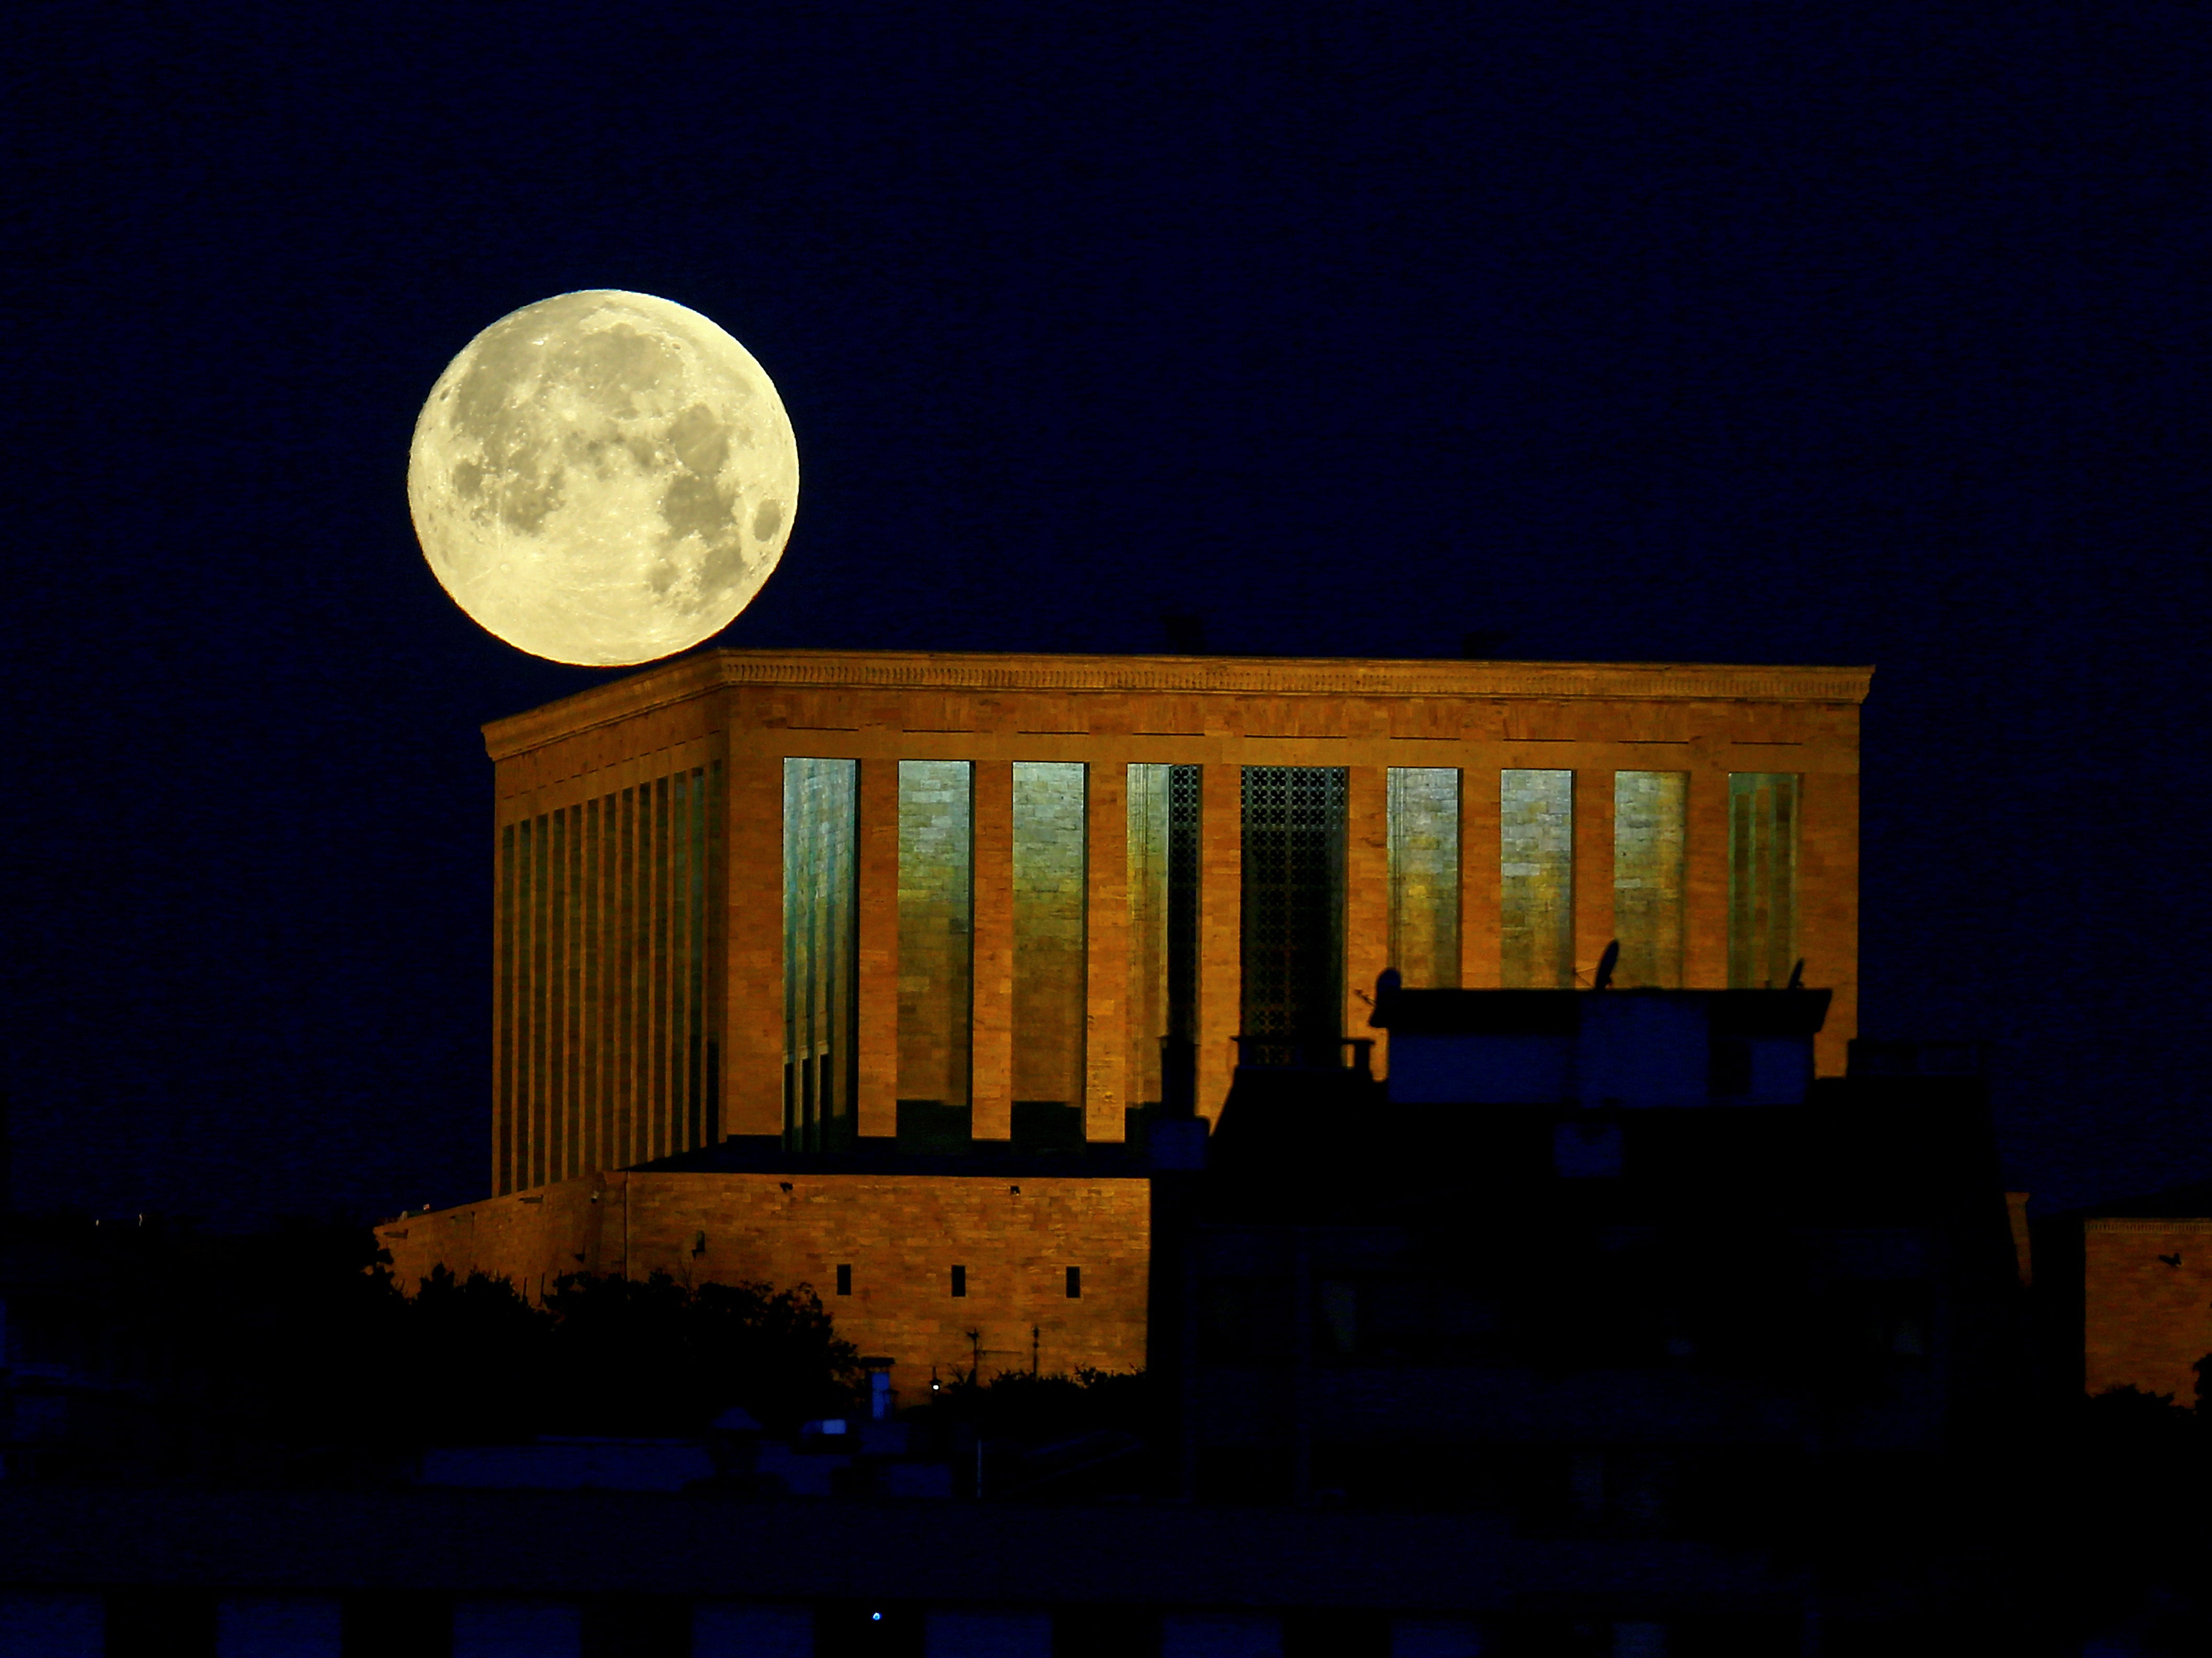 The full moon seen over the mausoleum of modern Turkey’s founder Mustafa Kemal Ataturk in Ankara, Turkey, on 26 May 2021